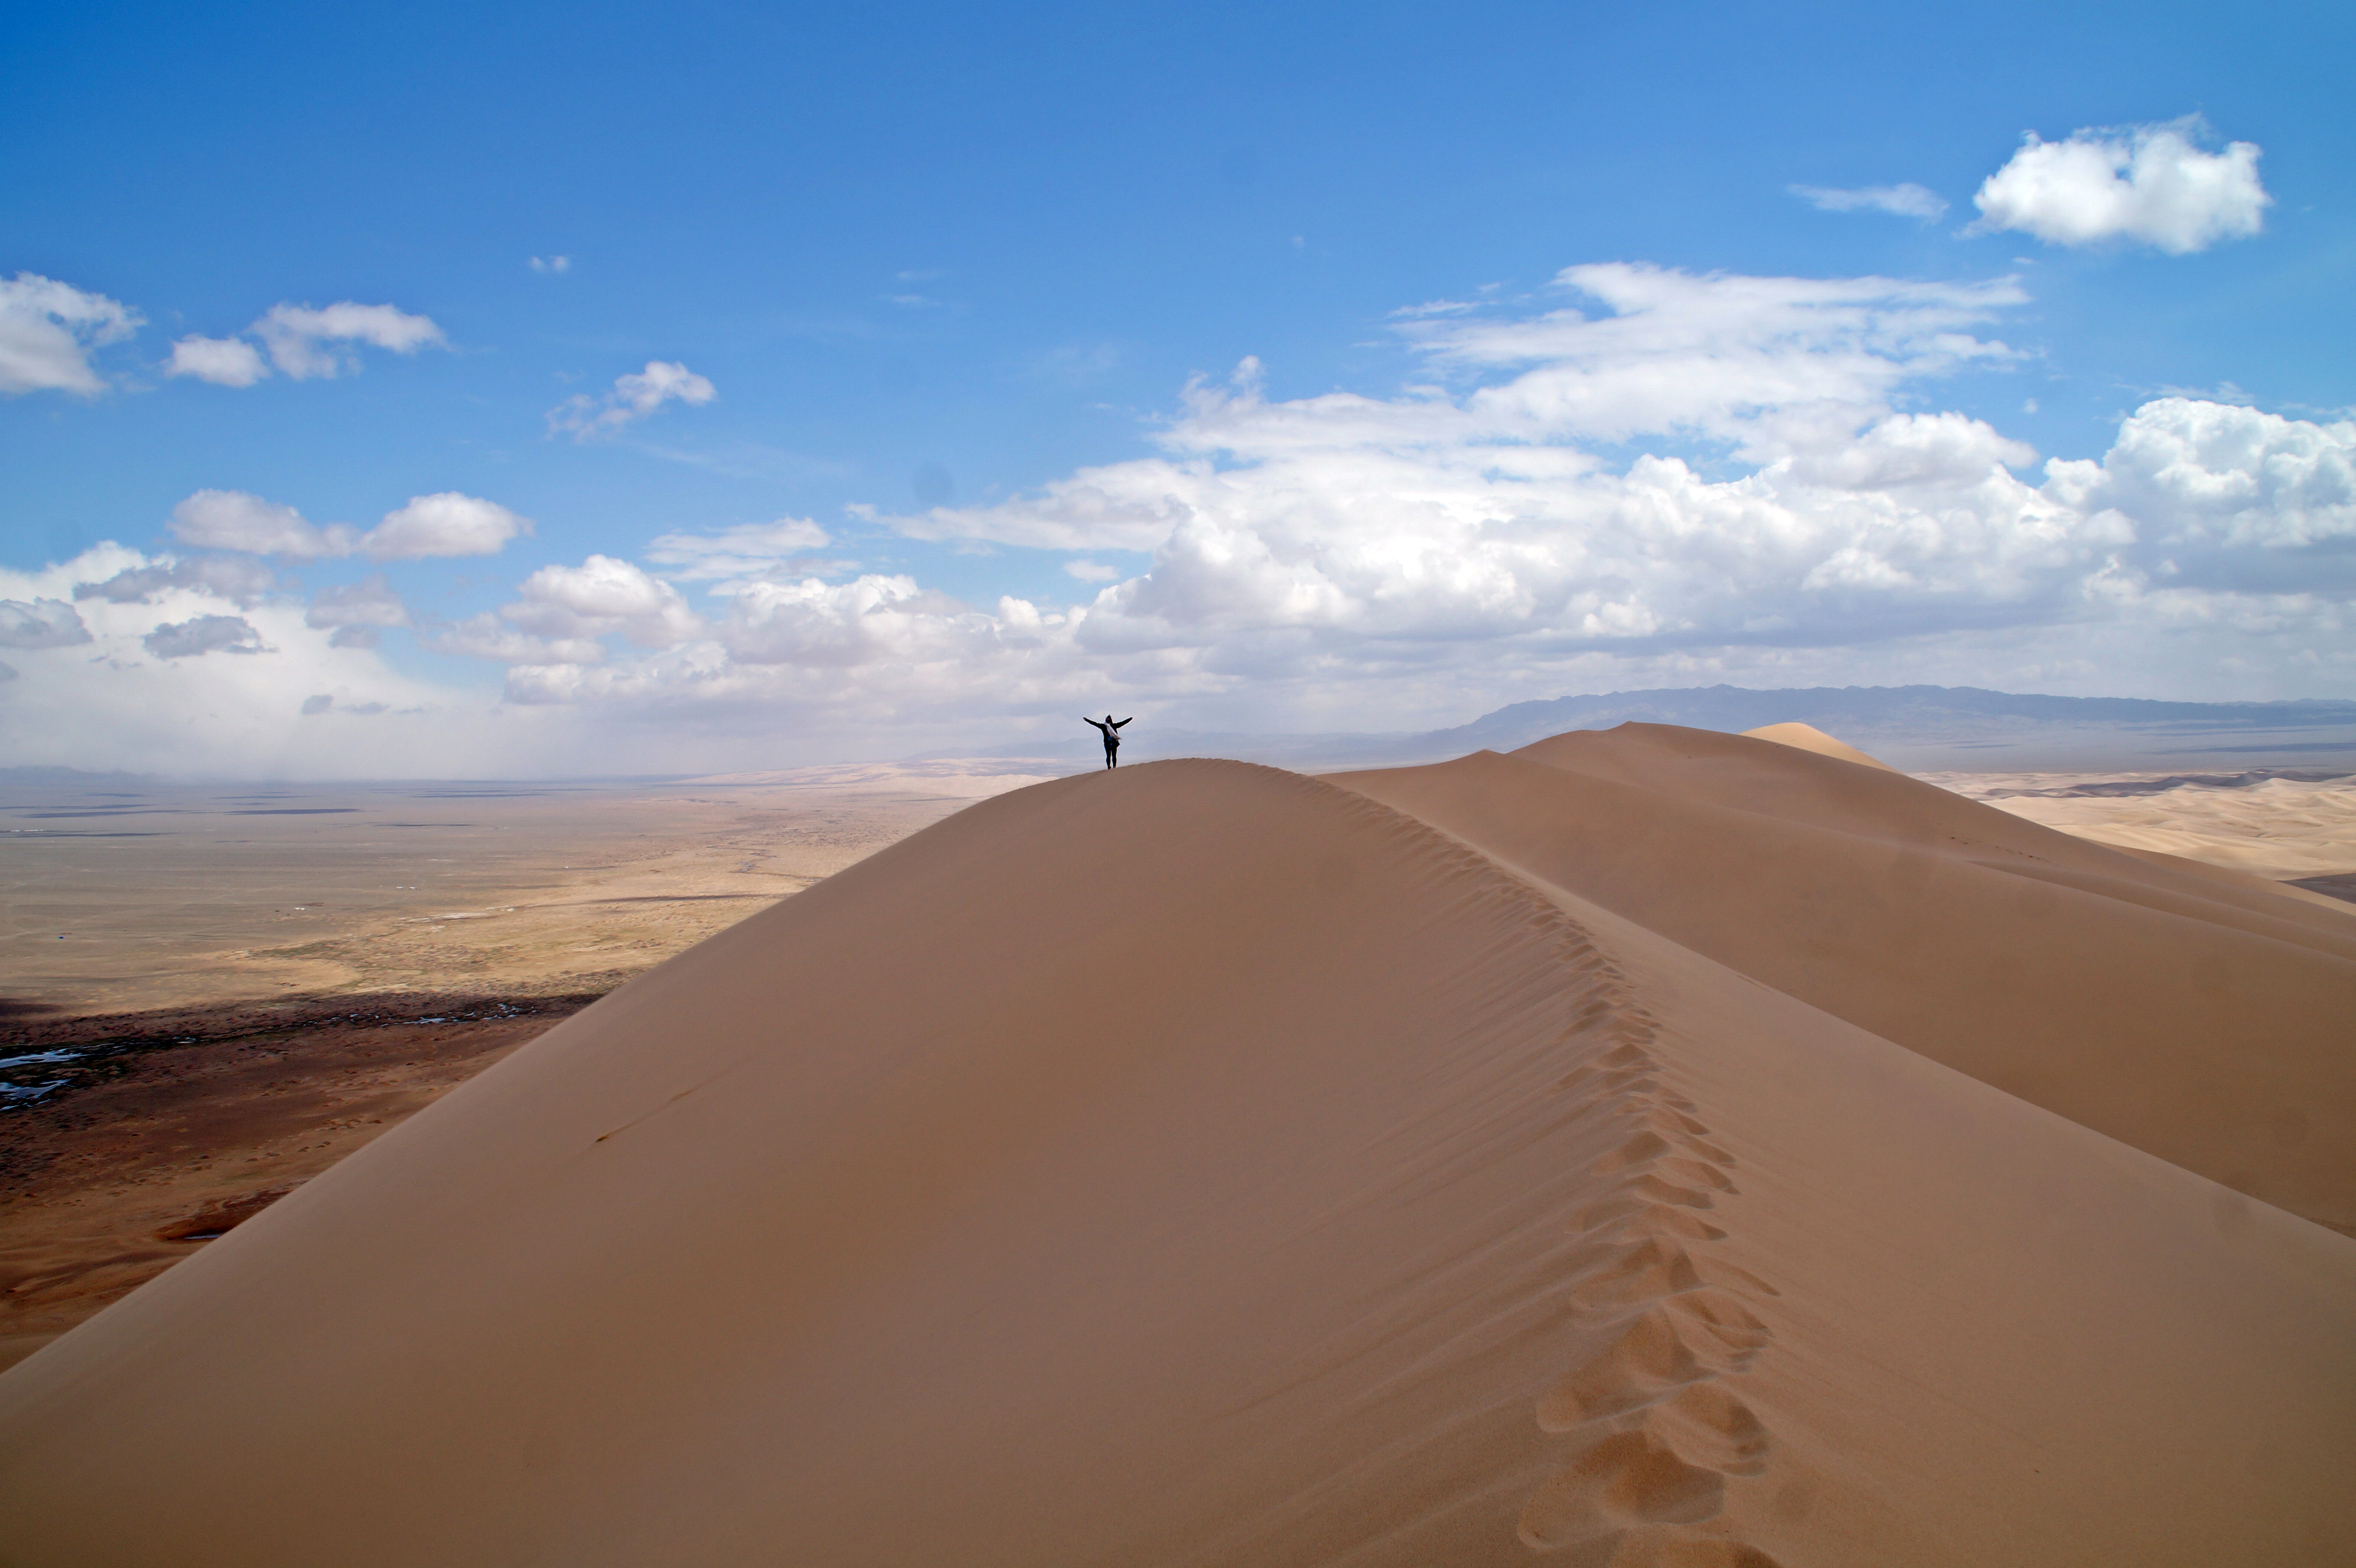 On top of a sand dune in the Gobi Desert, Mongolia